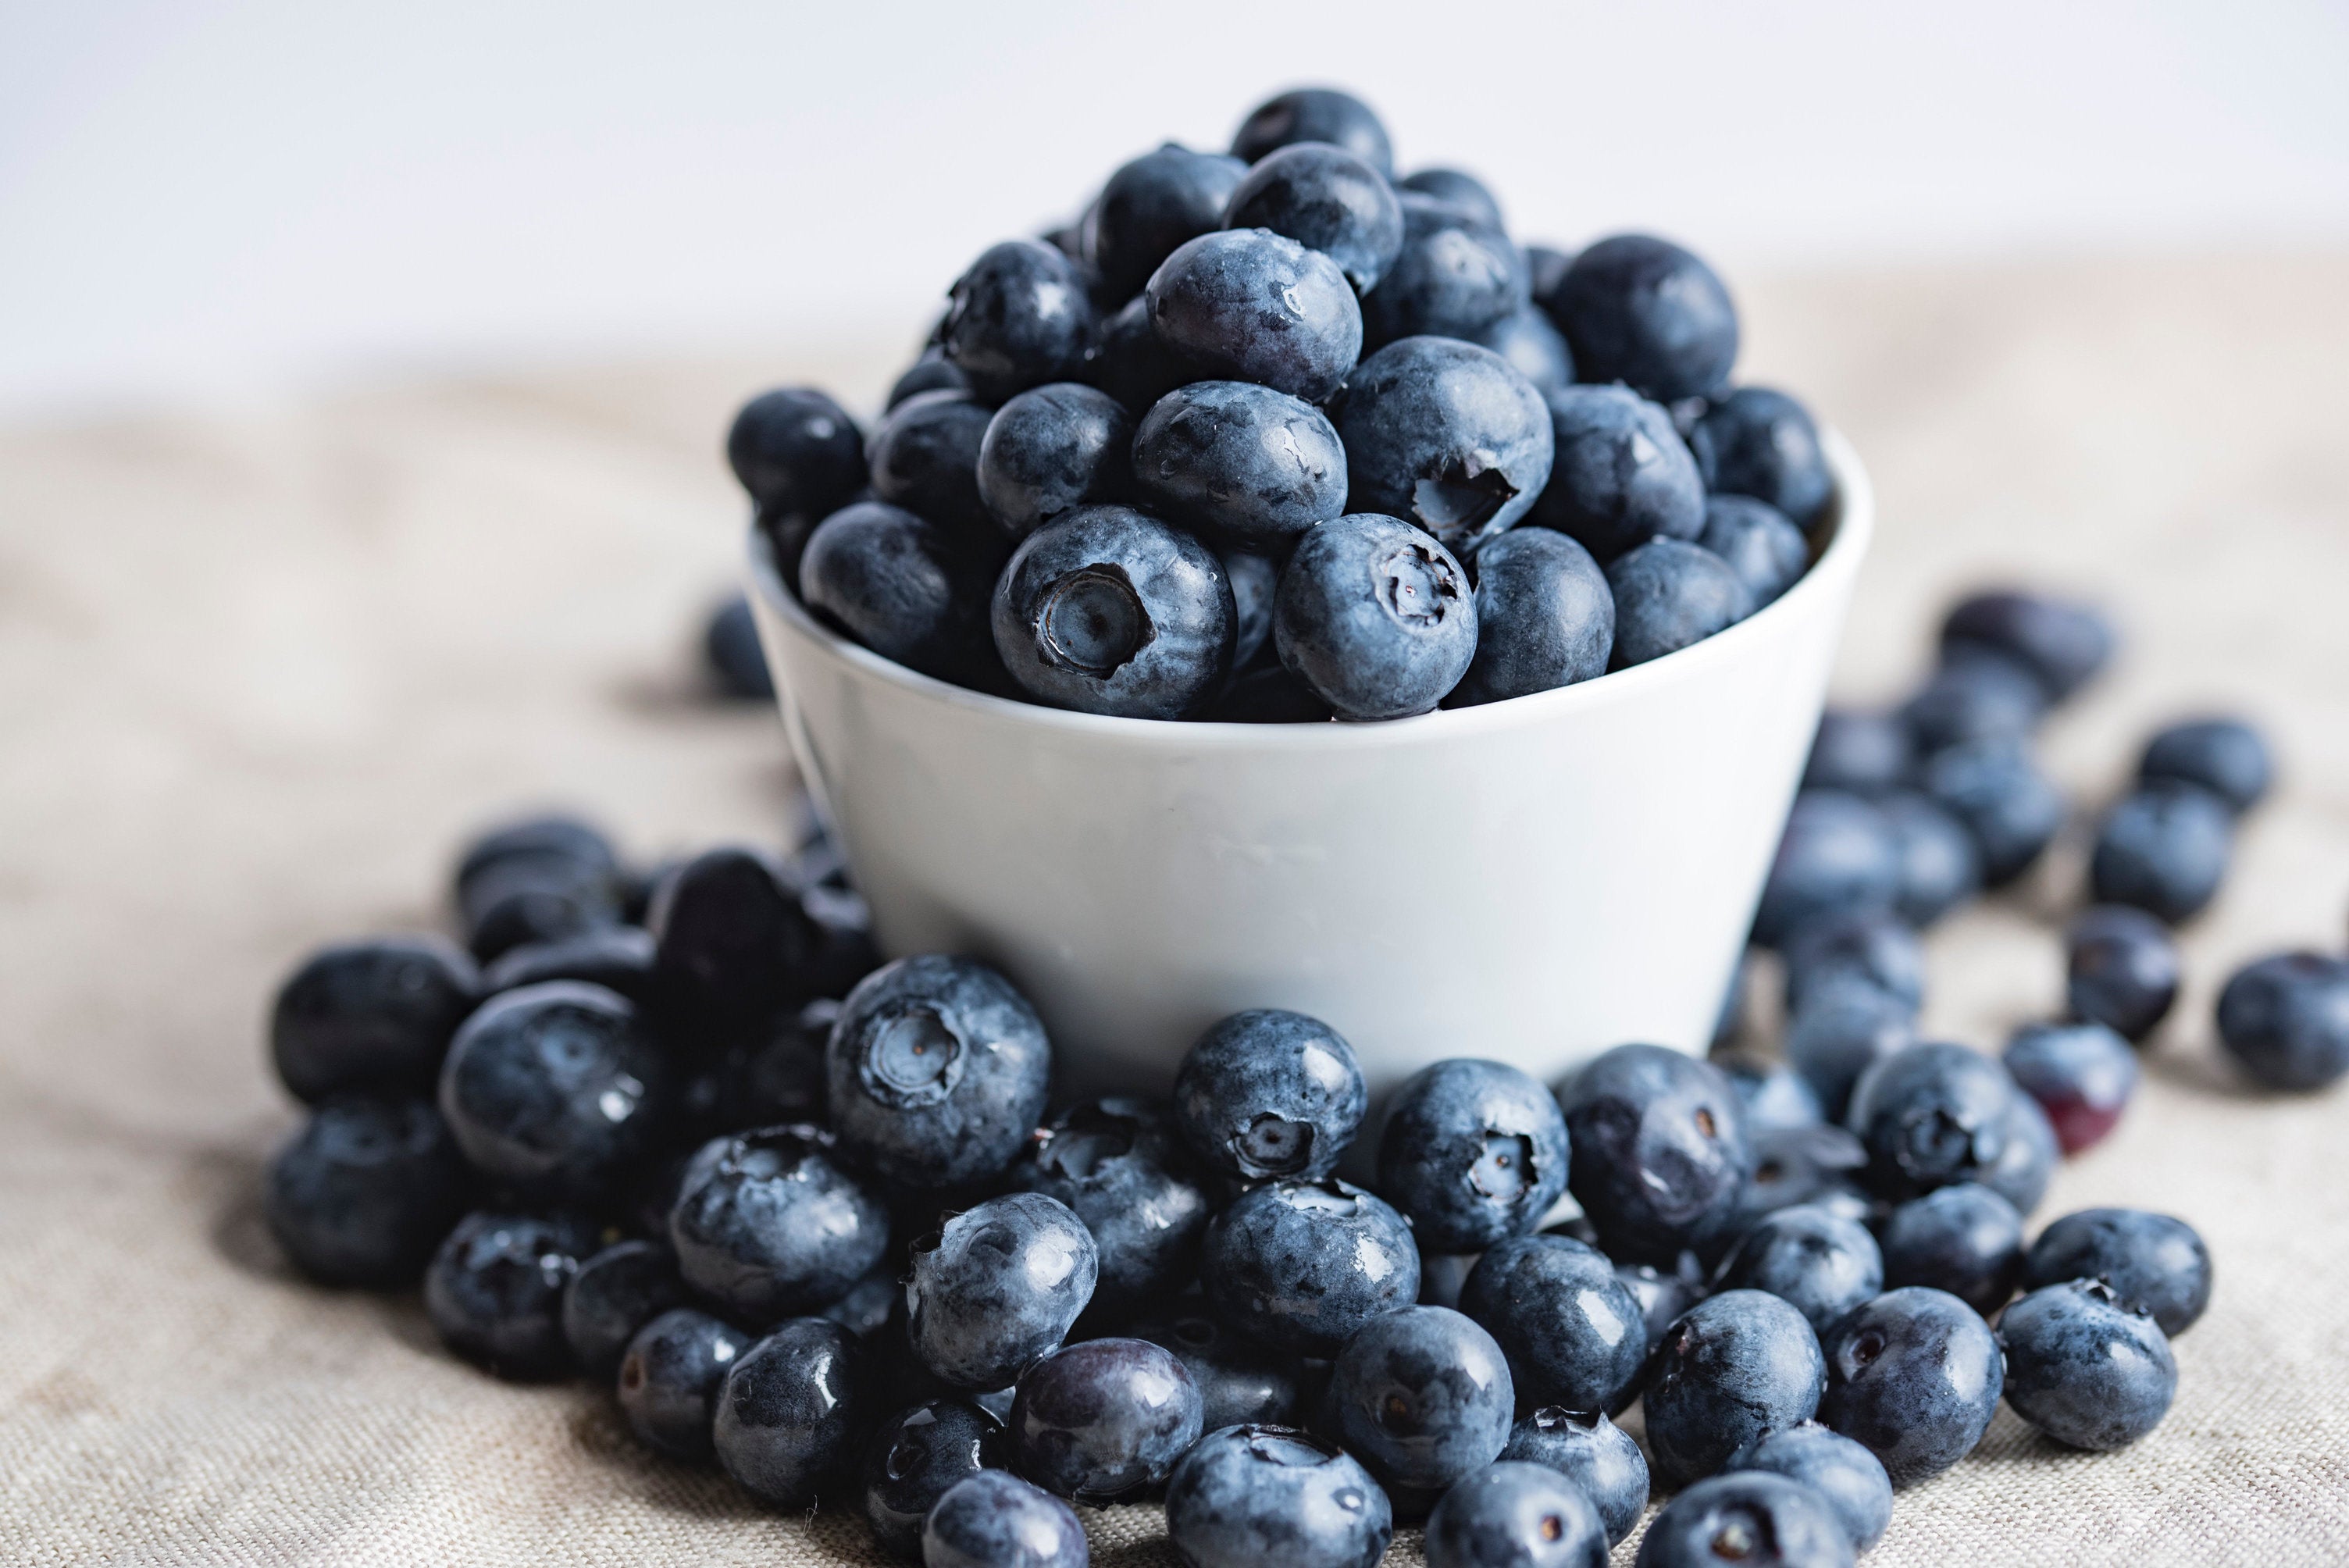 Image of blueberries in a white ramekin